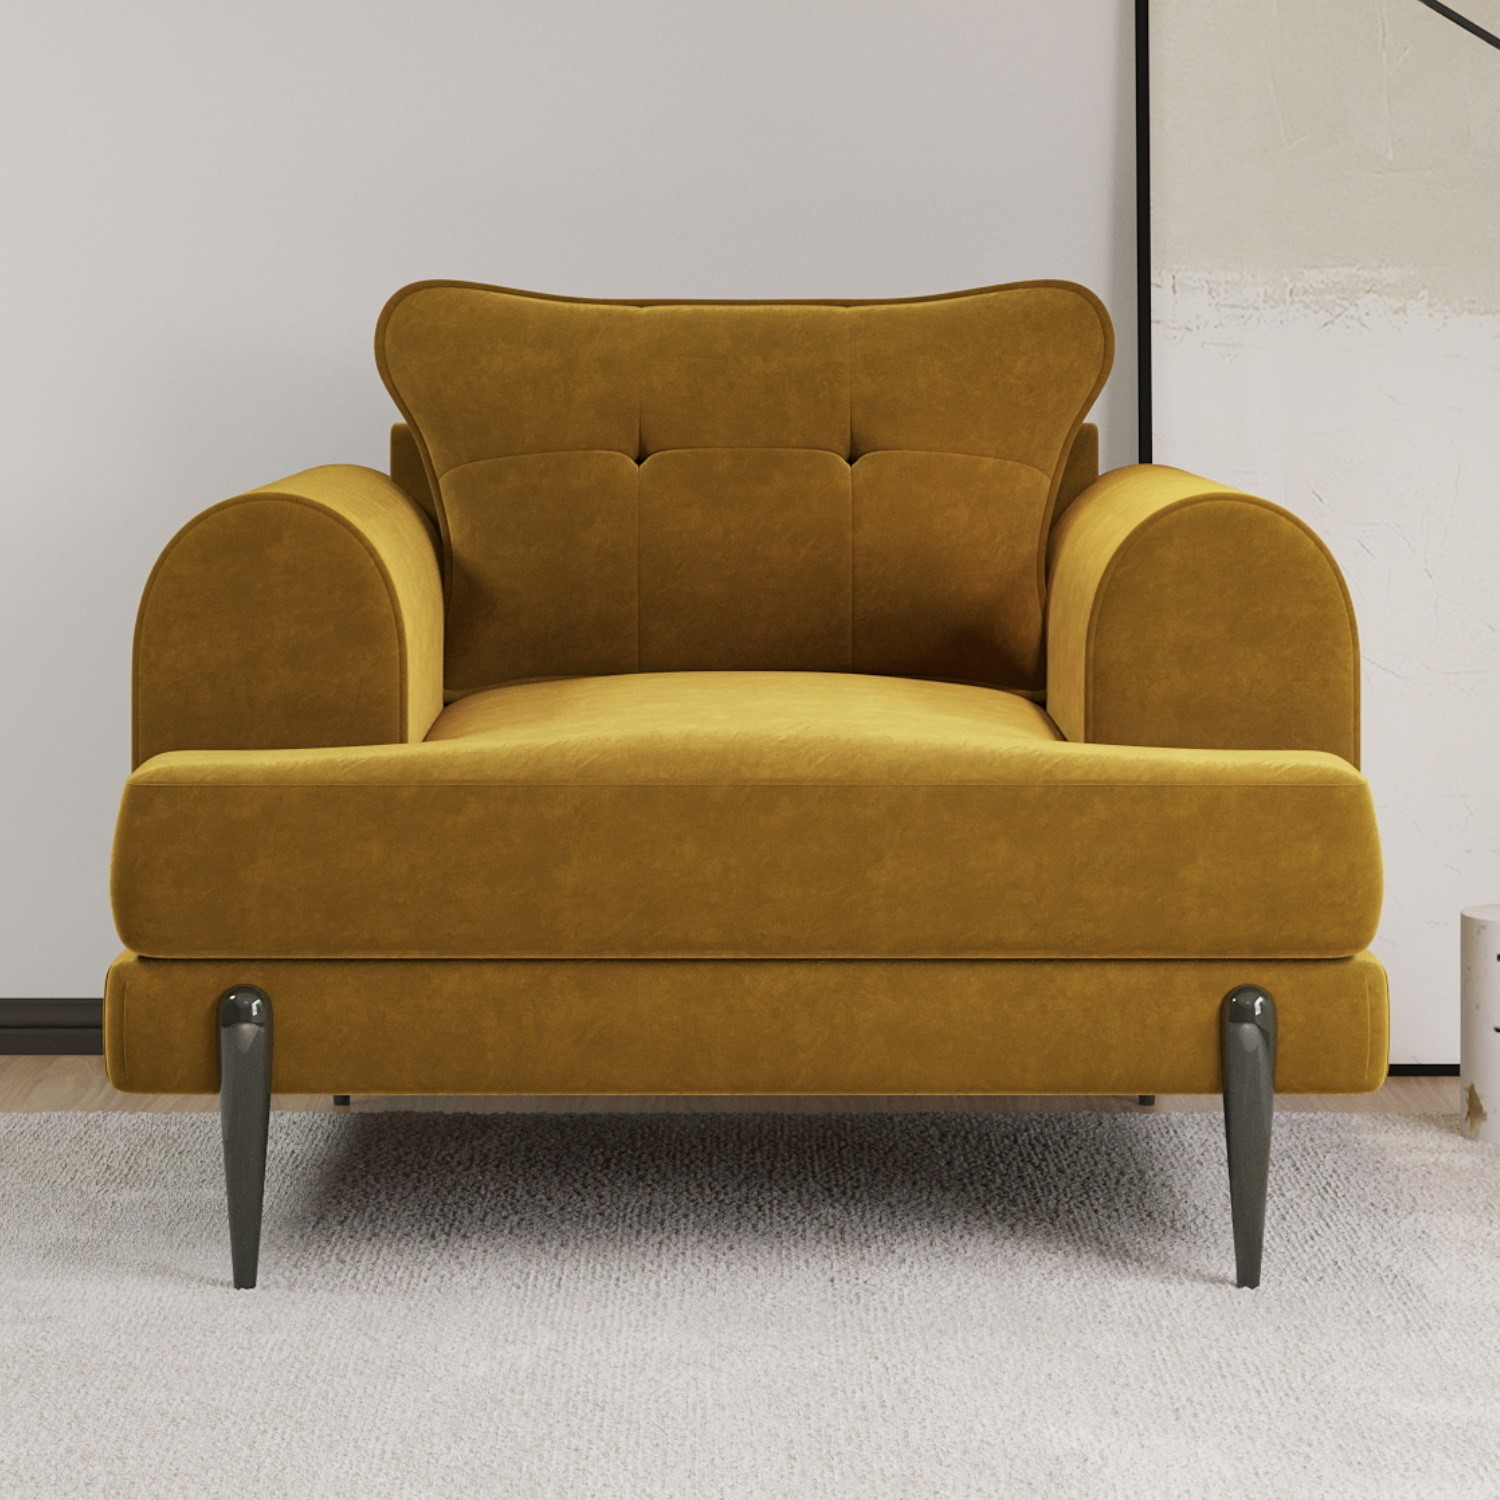 Read more about Mustard velvet armchair rosie